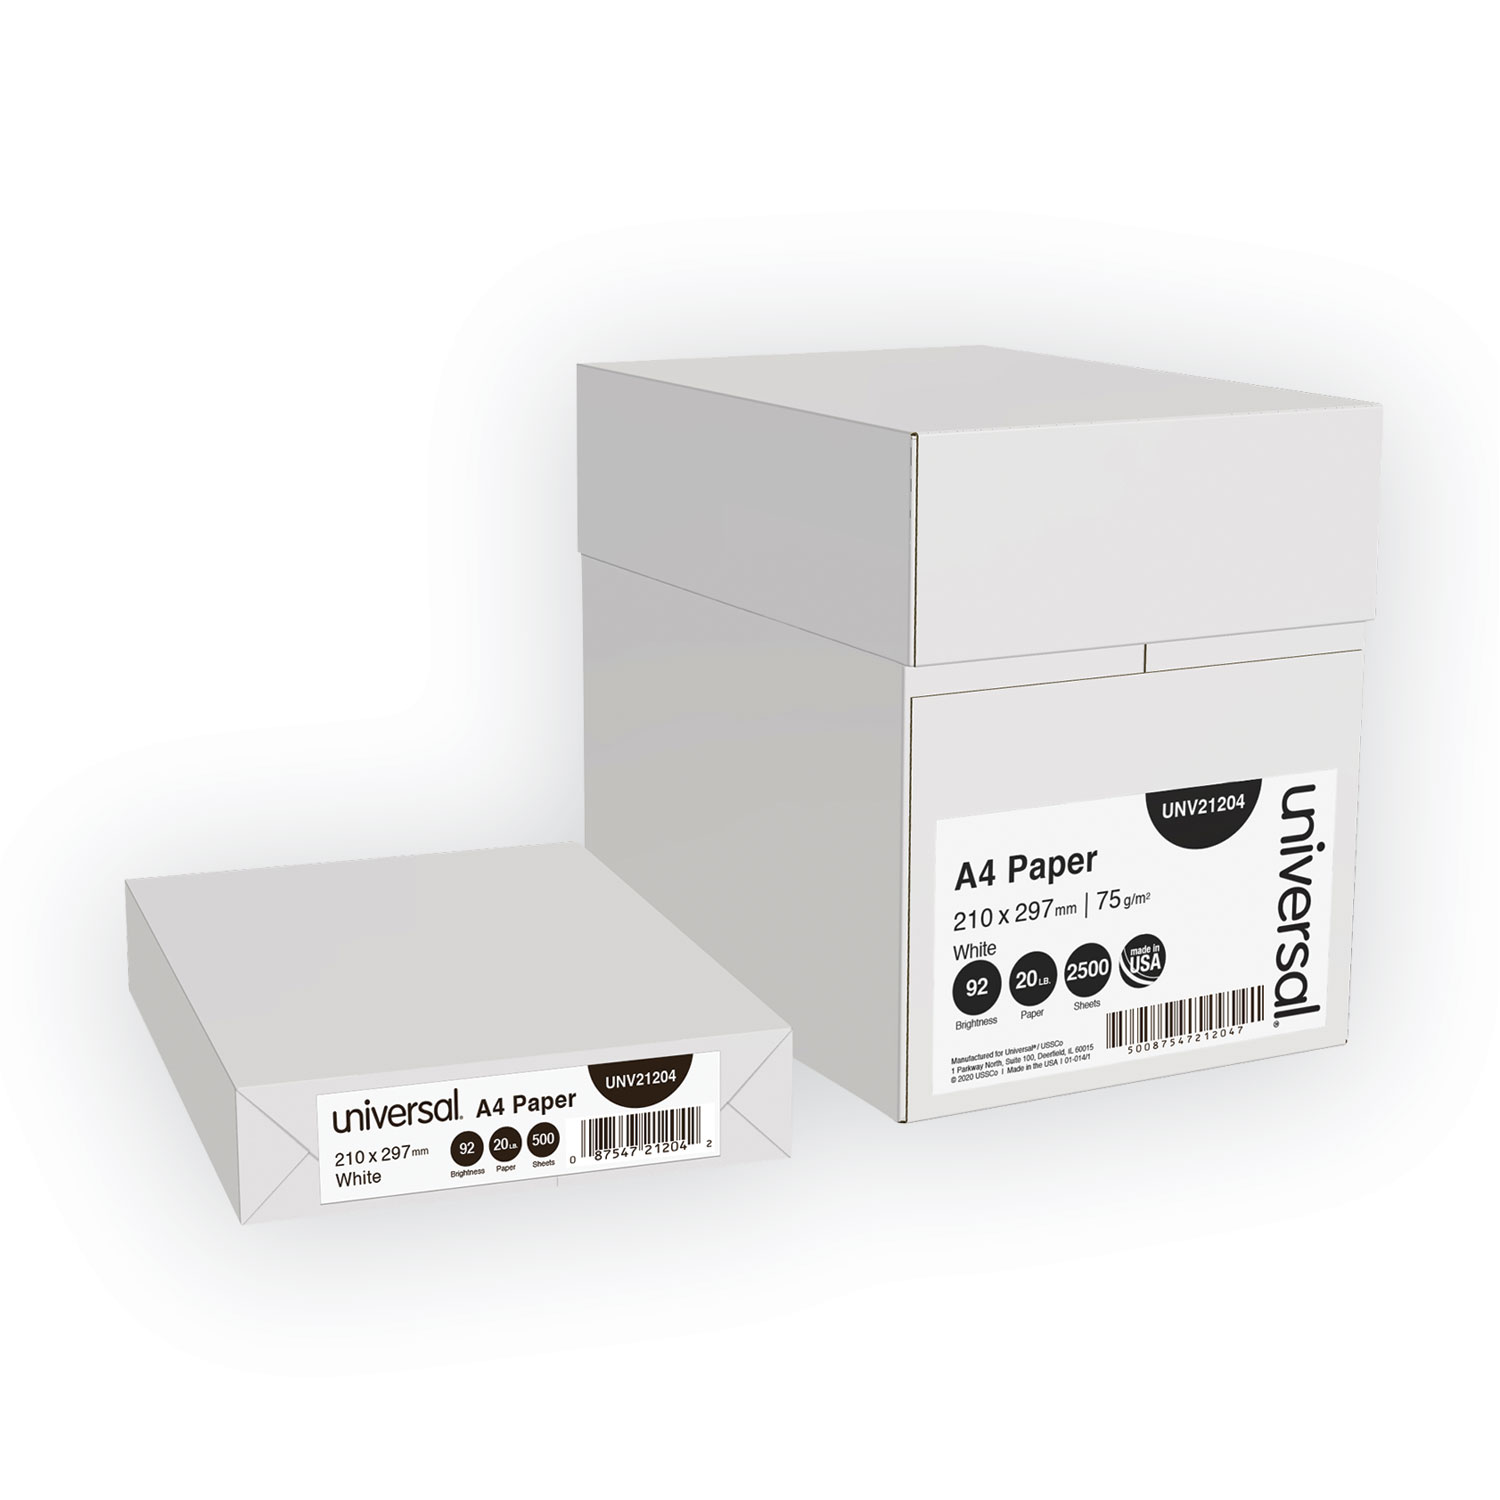  Universal UNV21204 Copy Paper, 92 Bright, 20lb, A4, White, 500 Sheets/Ream, 5 Reams/Carton (UNV21204) 